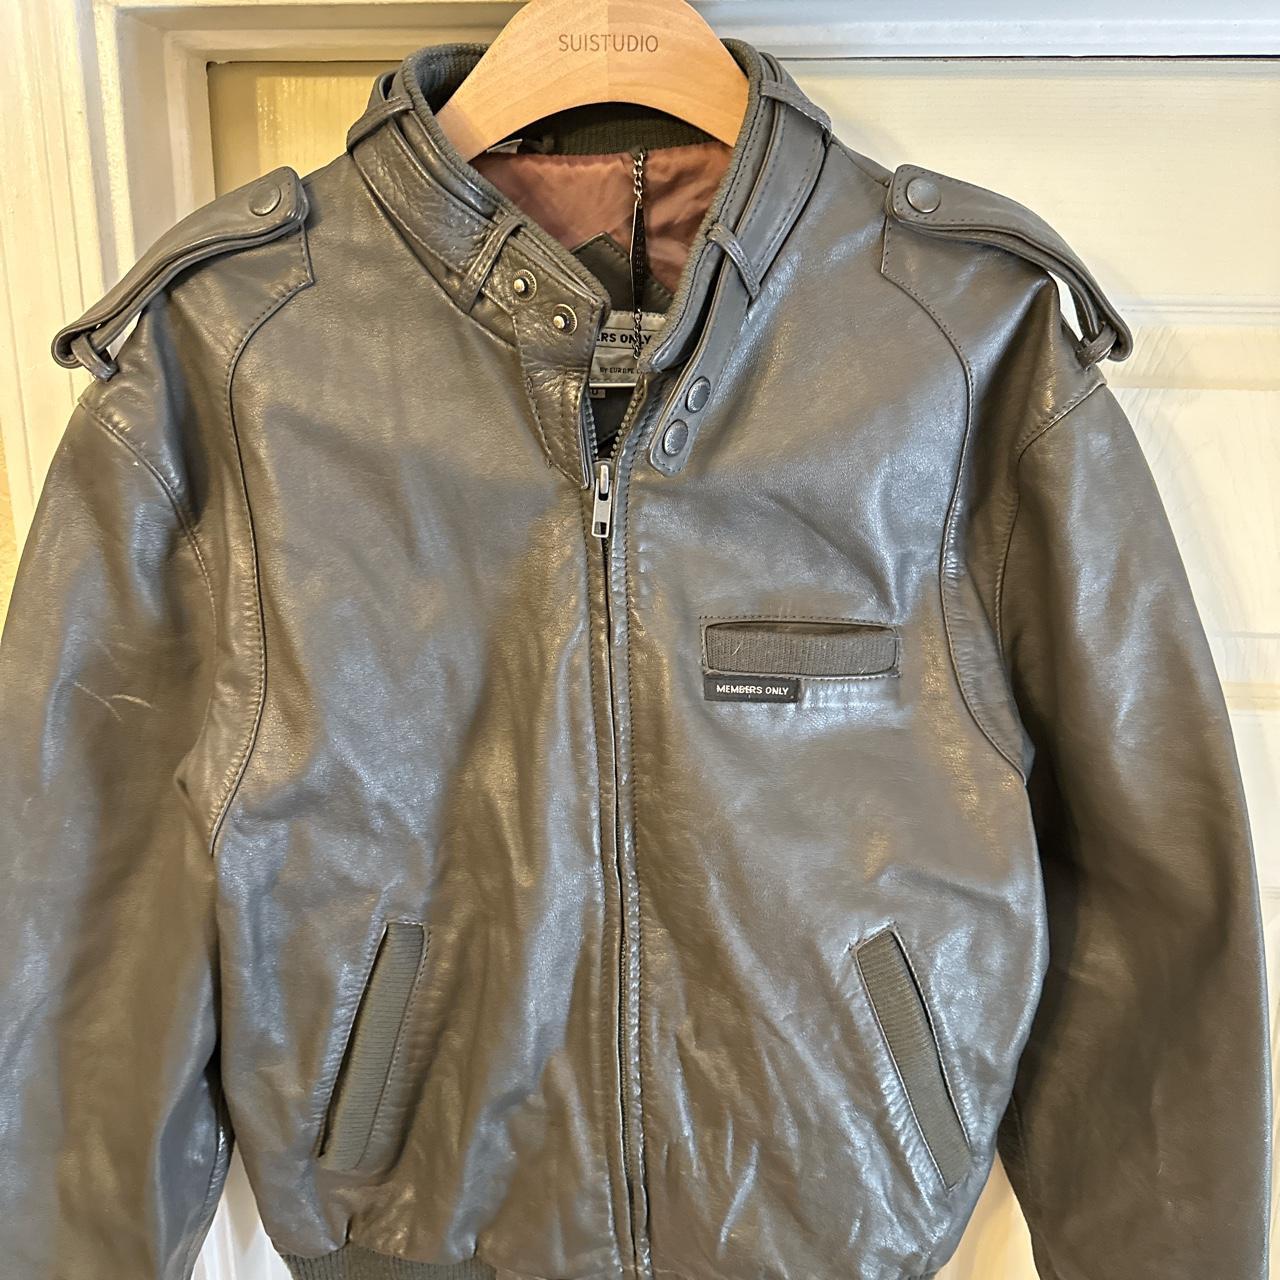 Vintage Members only leather jacket Bomber biker... - Depop